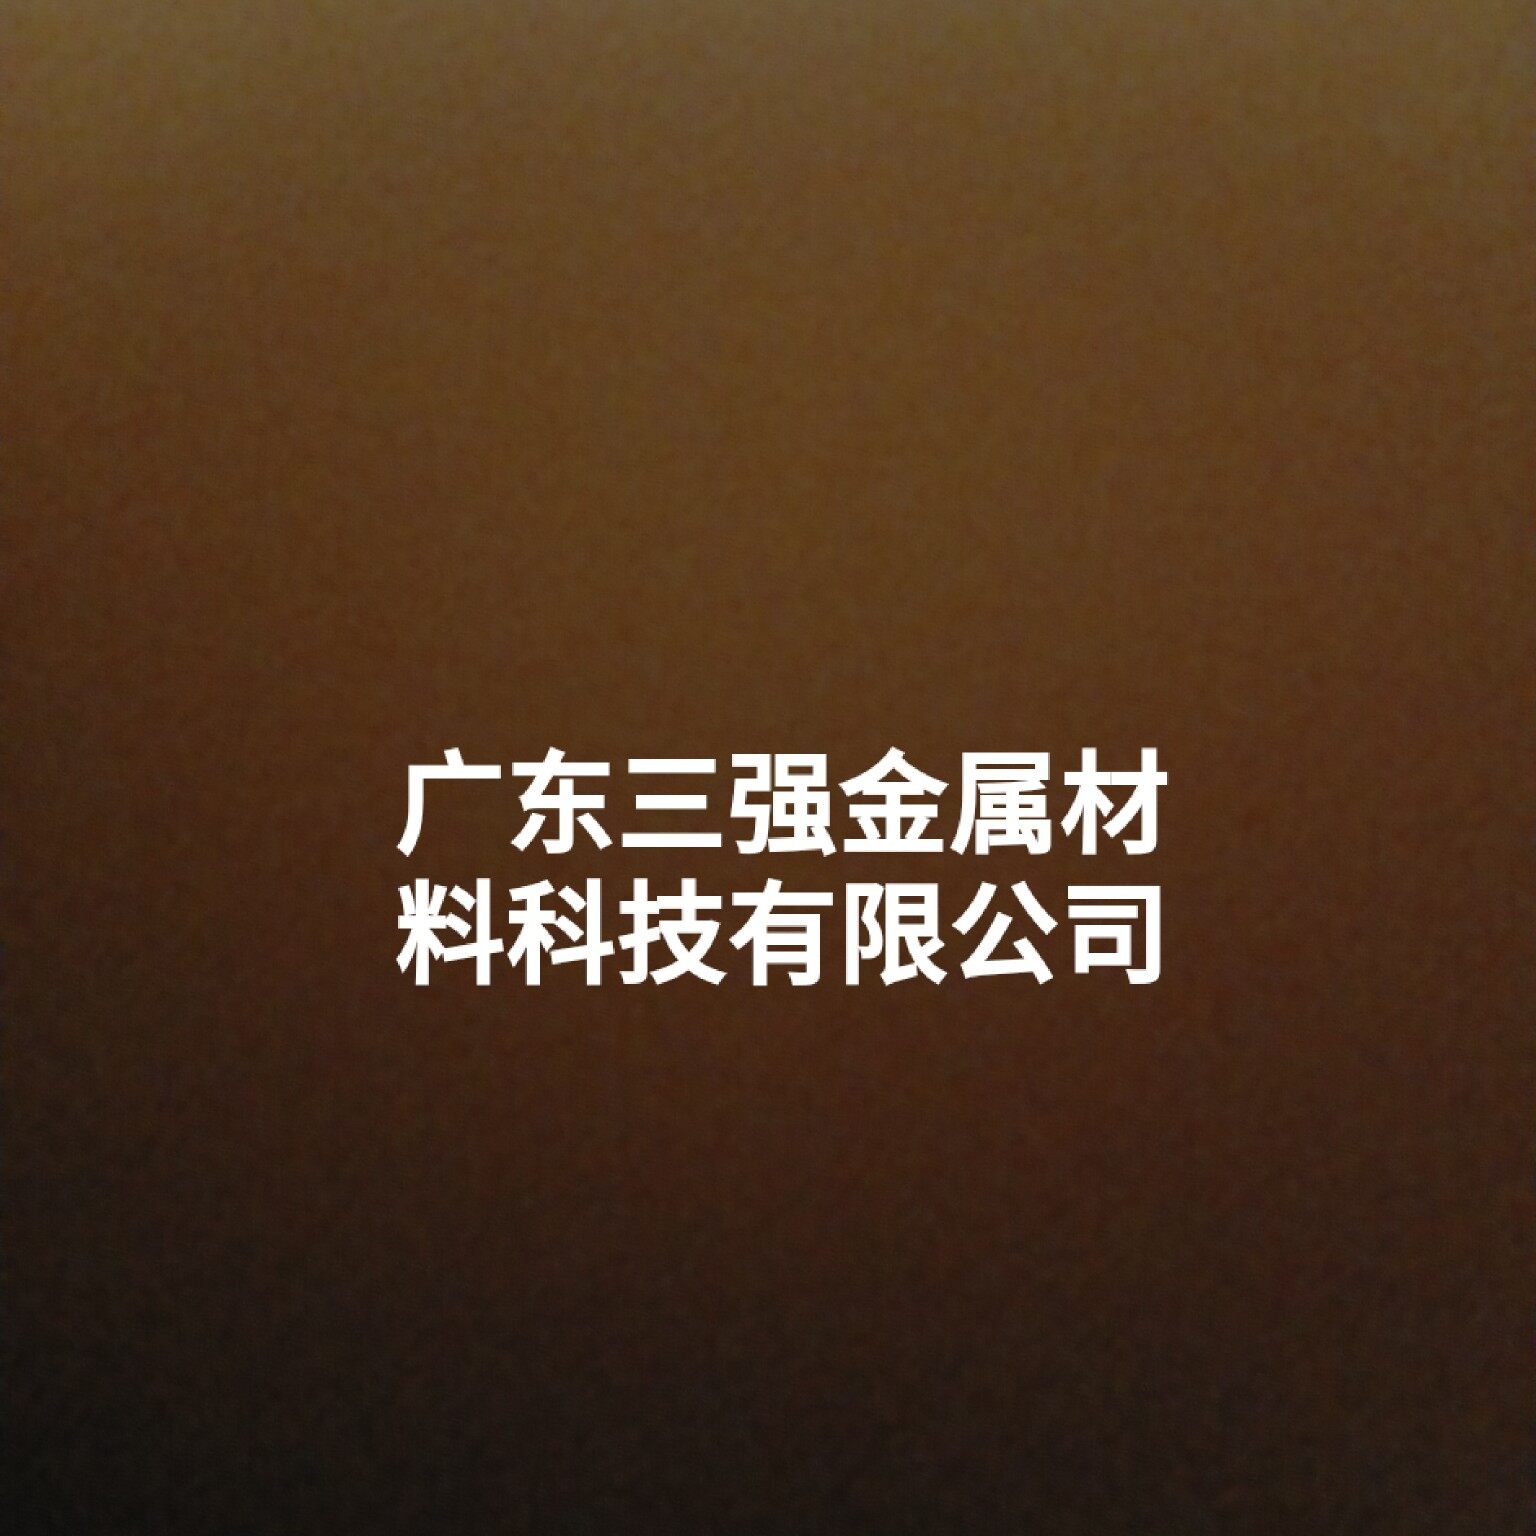 广东三强金属材料科技有限公司logo